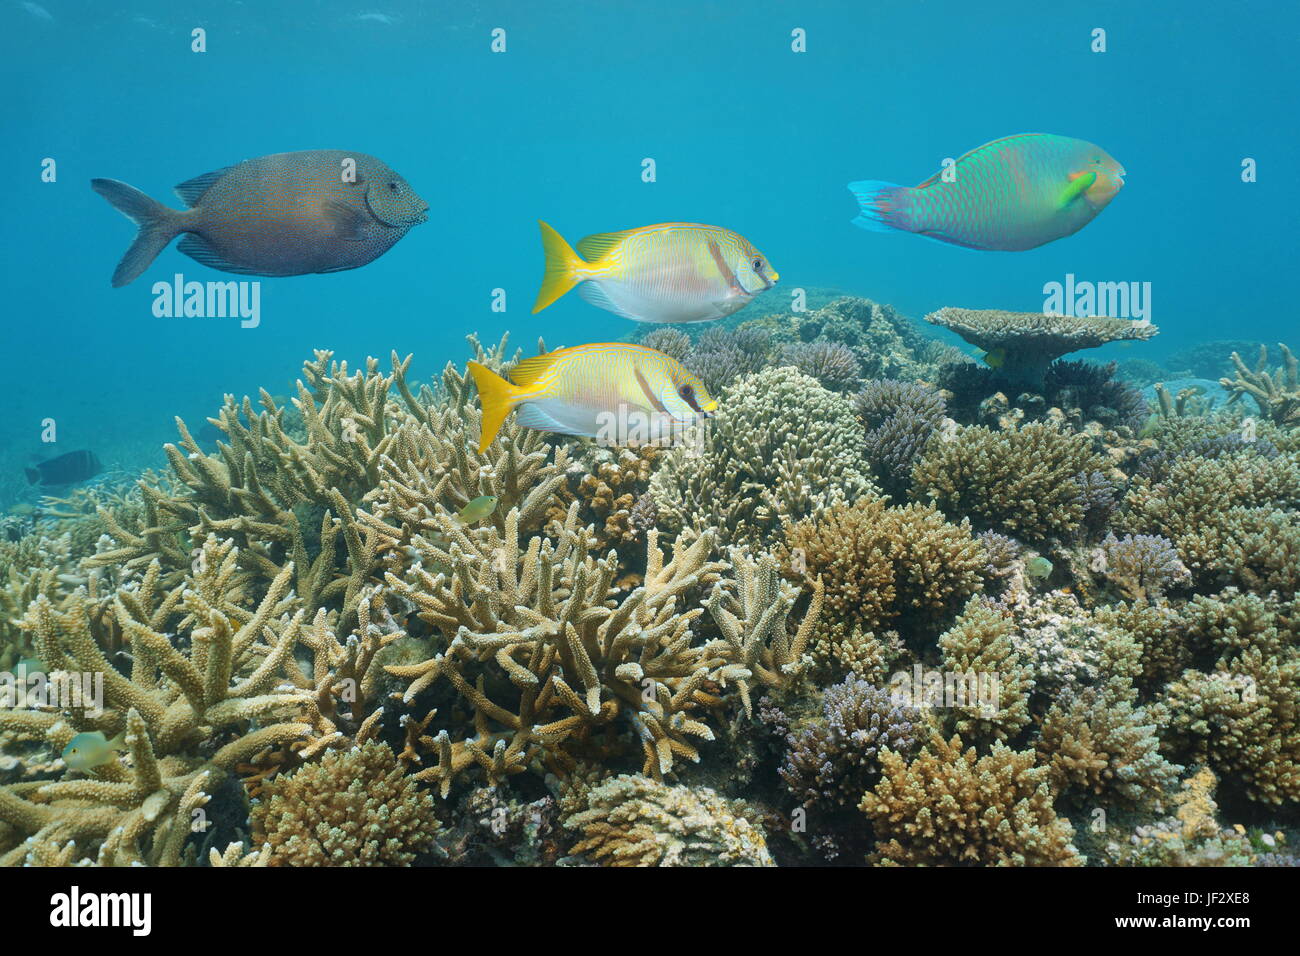 Santé des récifs de corail avec des poissons colorés poisson lapin, sous l'eau dans le lagon de l'île de Grande Terre, Nouvelle Calédonie, océan Pacifique Sud, l'Océanie Banque D'Images